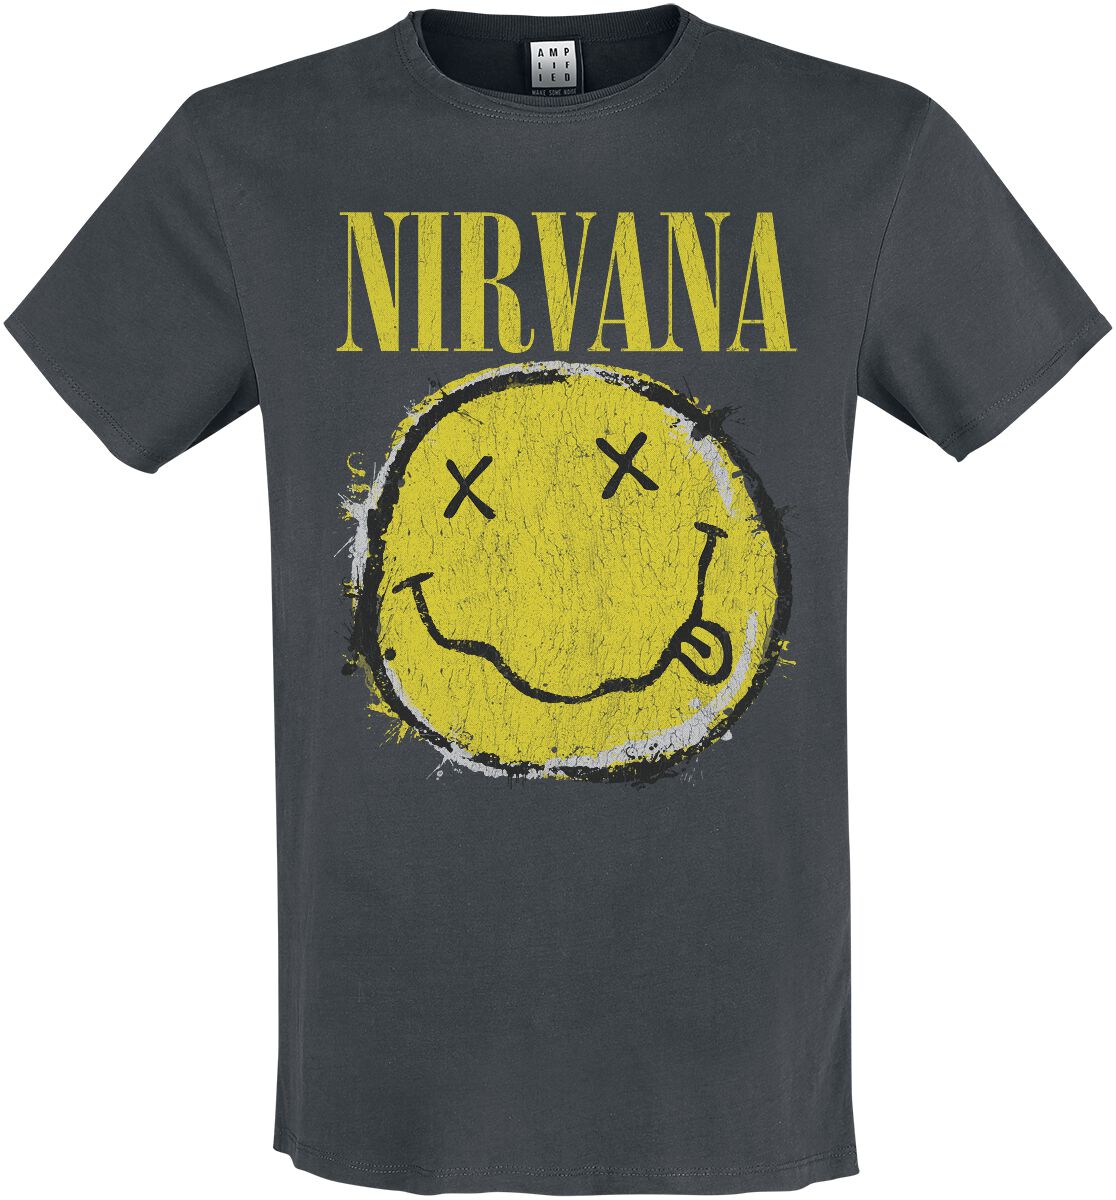 Nirvana T-Shirt - Amplified Collection - Worn Out Smiley - S bis 3XL - für Männer - Größe 3XL - charcoal  - Lizenziertes Merchandise!